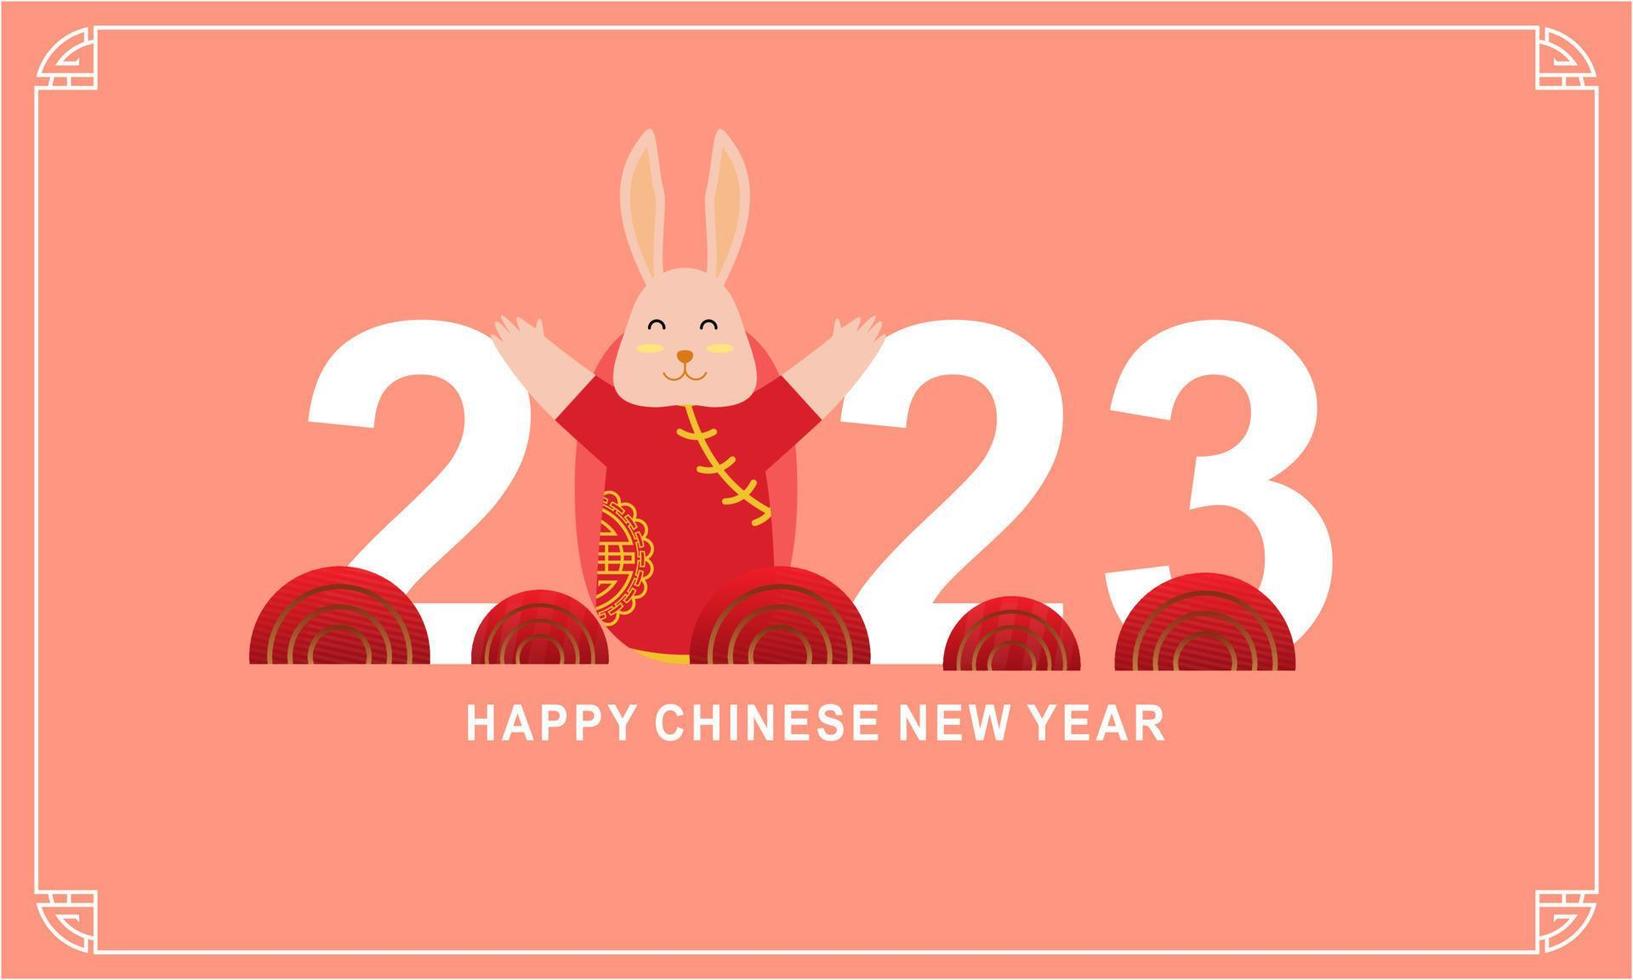 gelukkig Chinese nieuw jaar 2023 jaar van de konijn dierenriem logo achtergrond vector